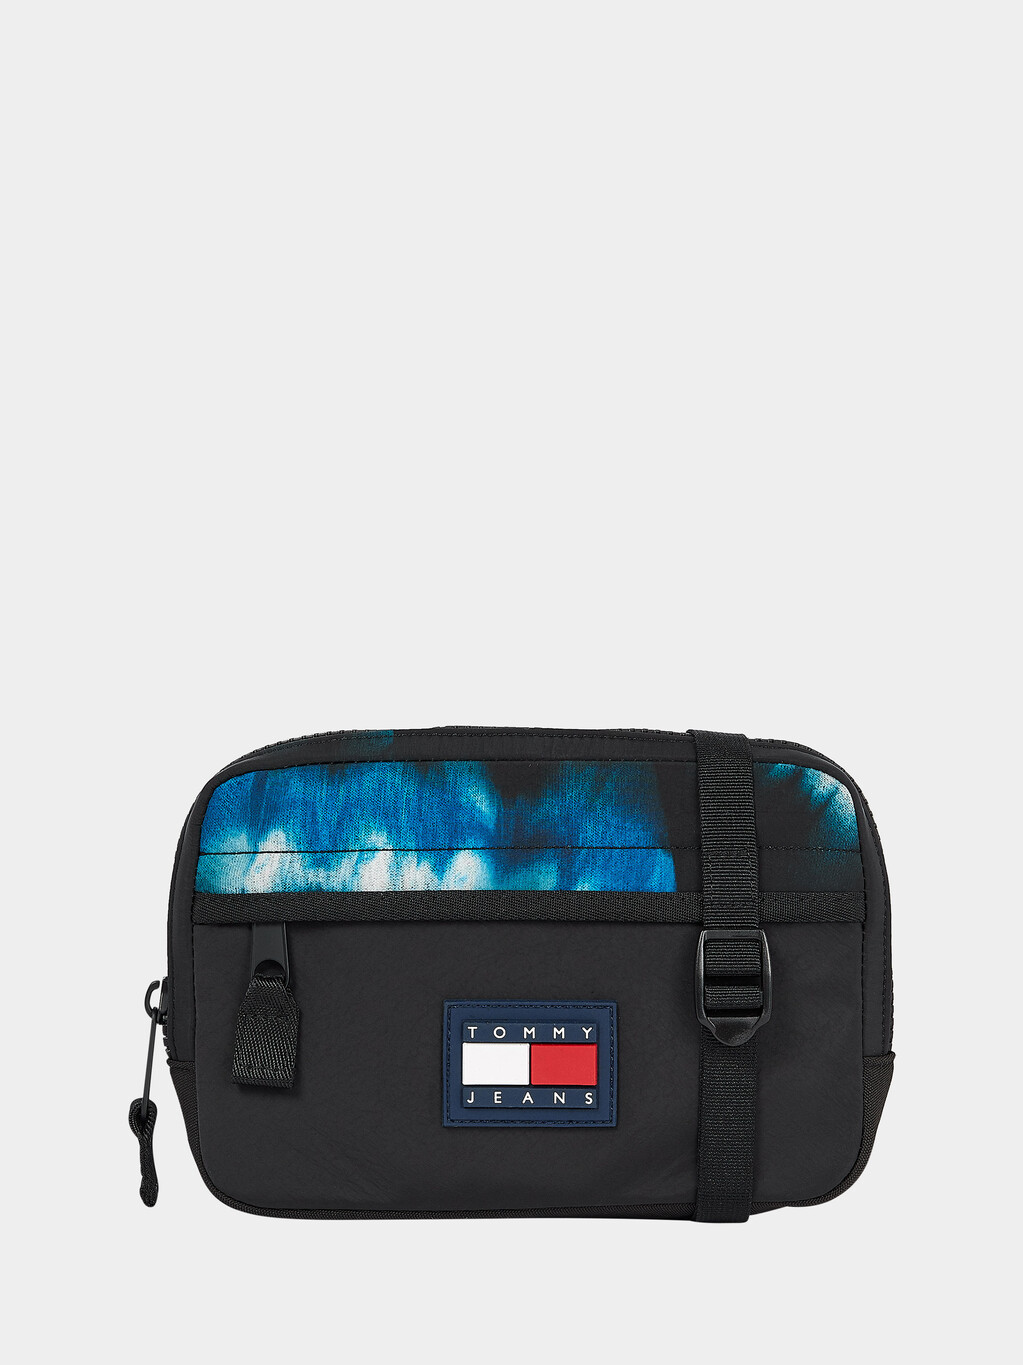 Buy ADVENTURE CROSSOVER BAG in color BLACK